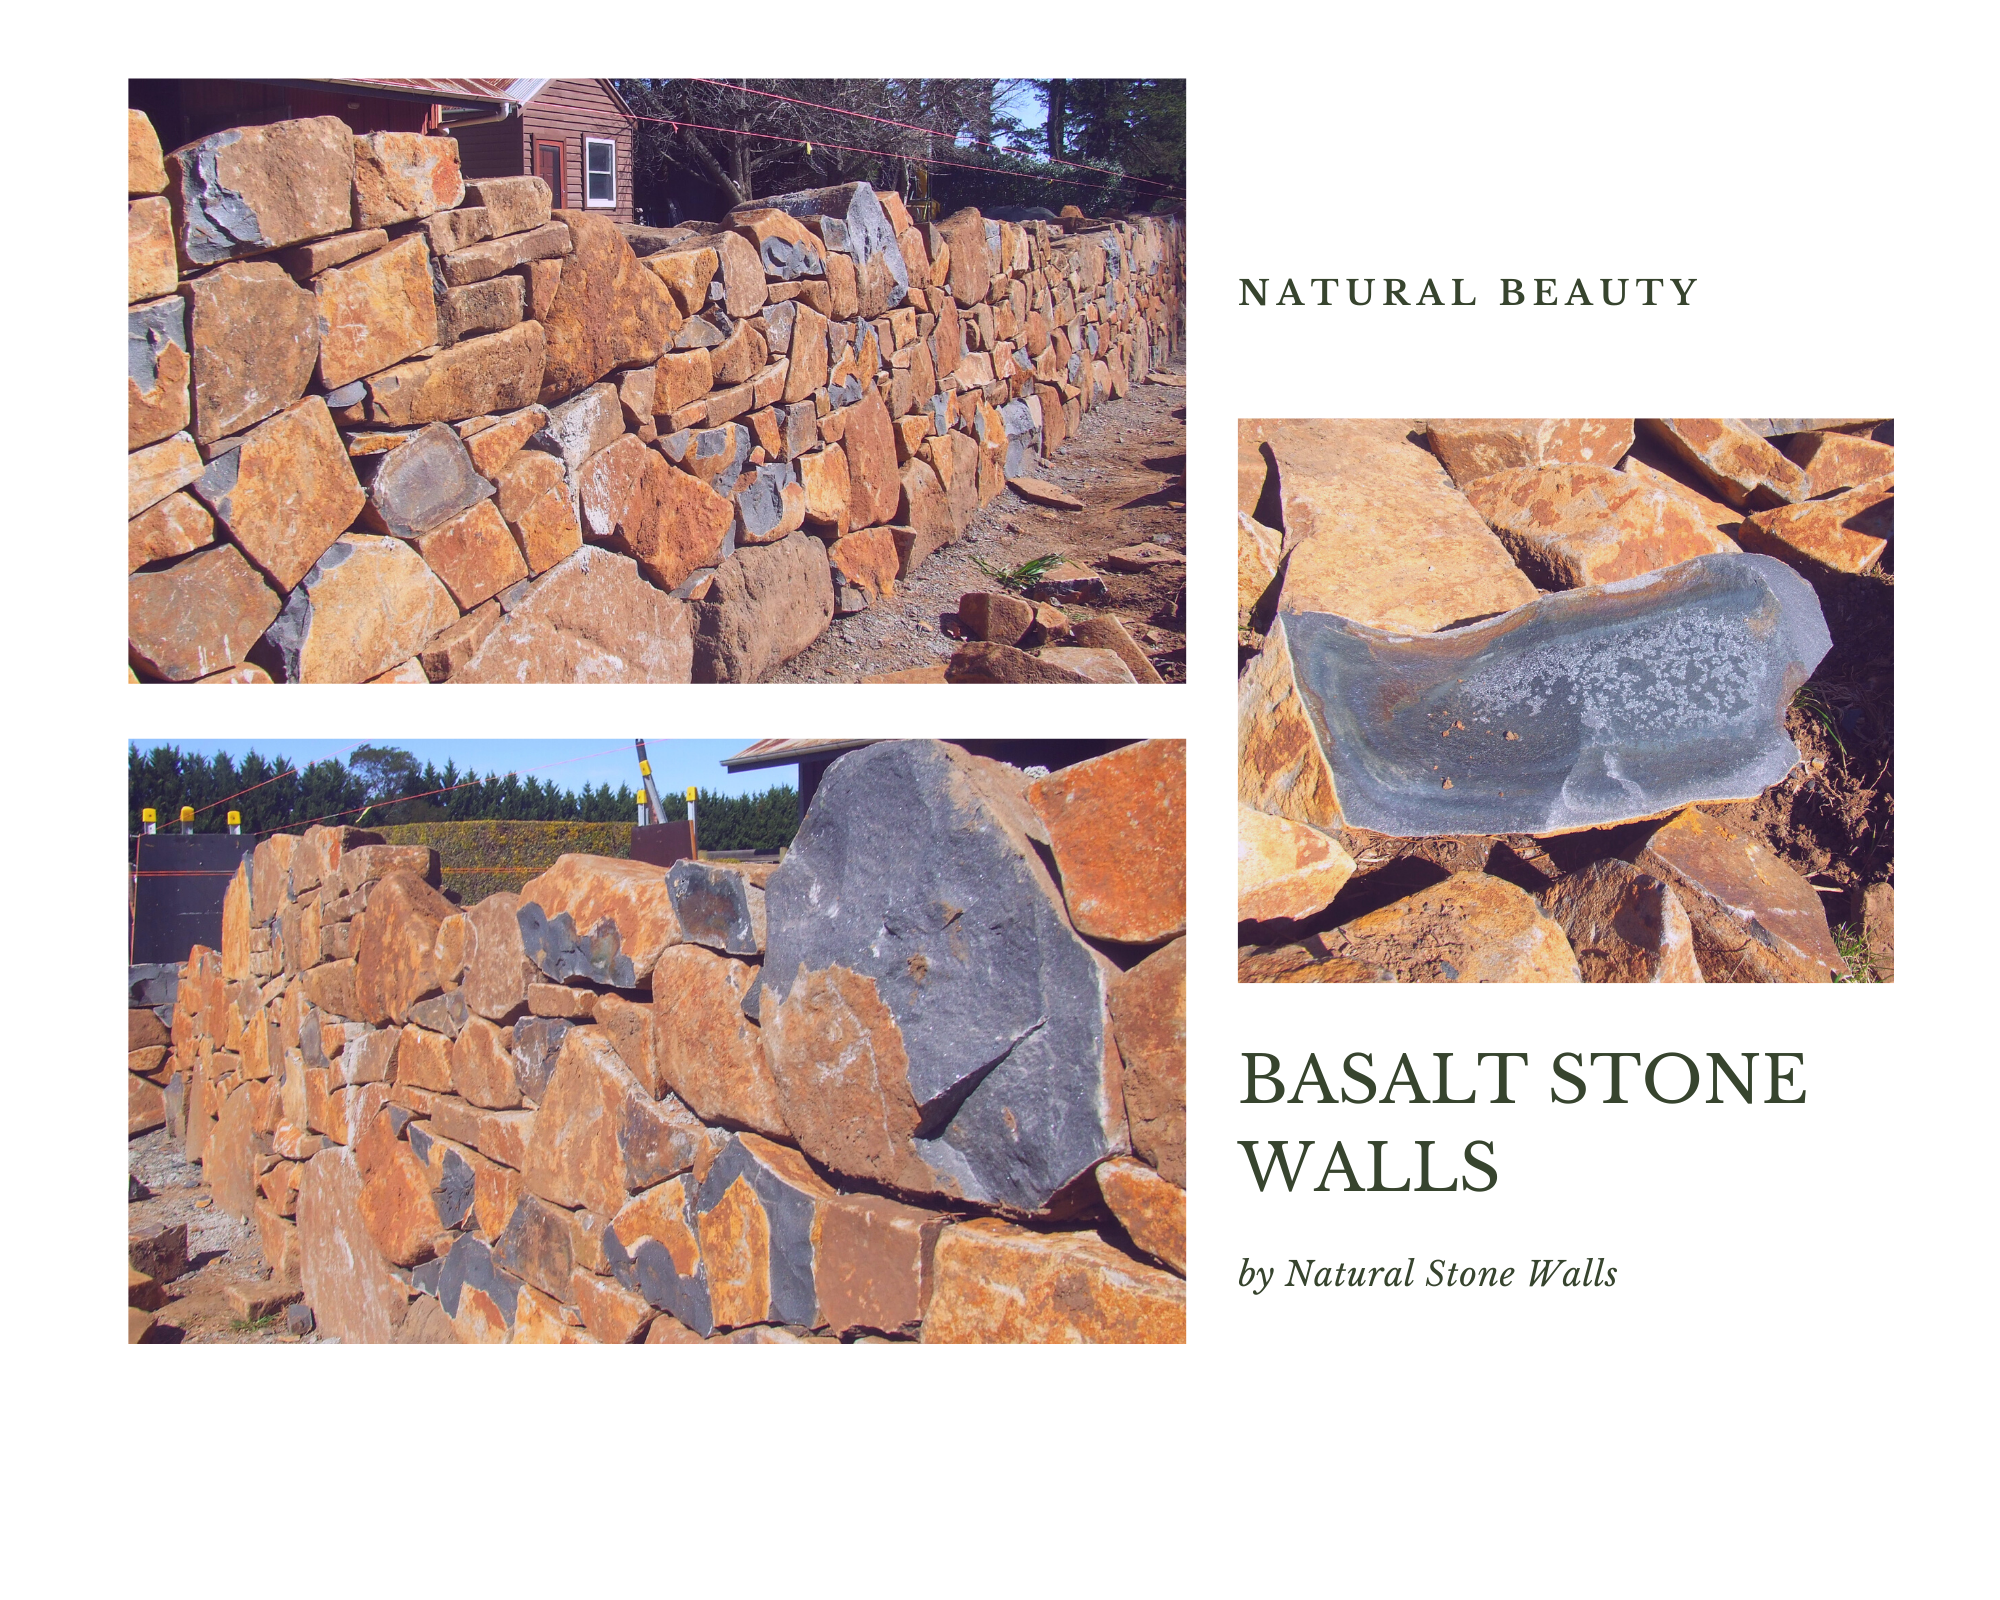 Natural Stone Walls - DIY, Basalt Stone Walls